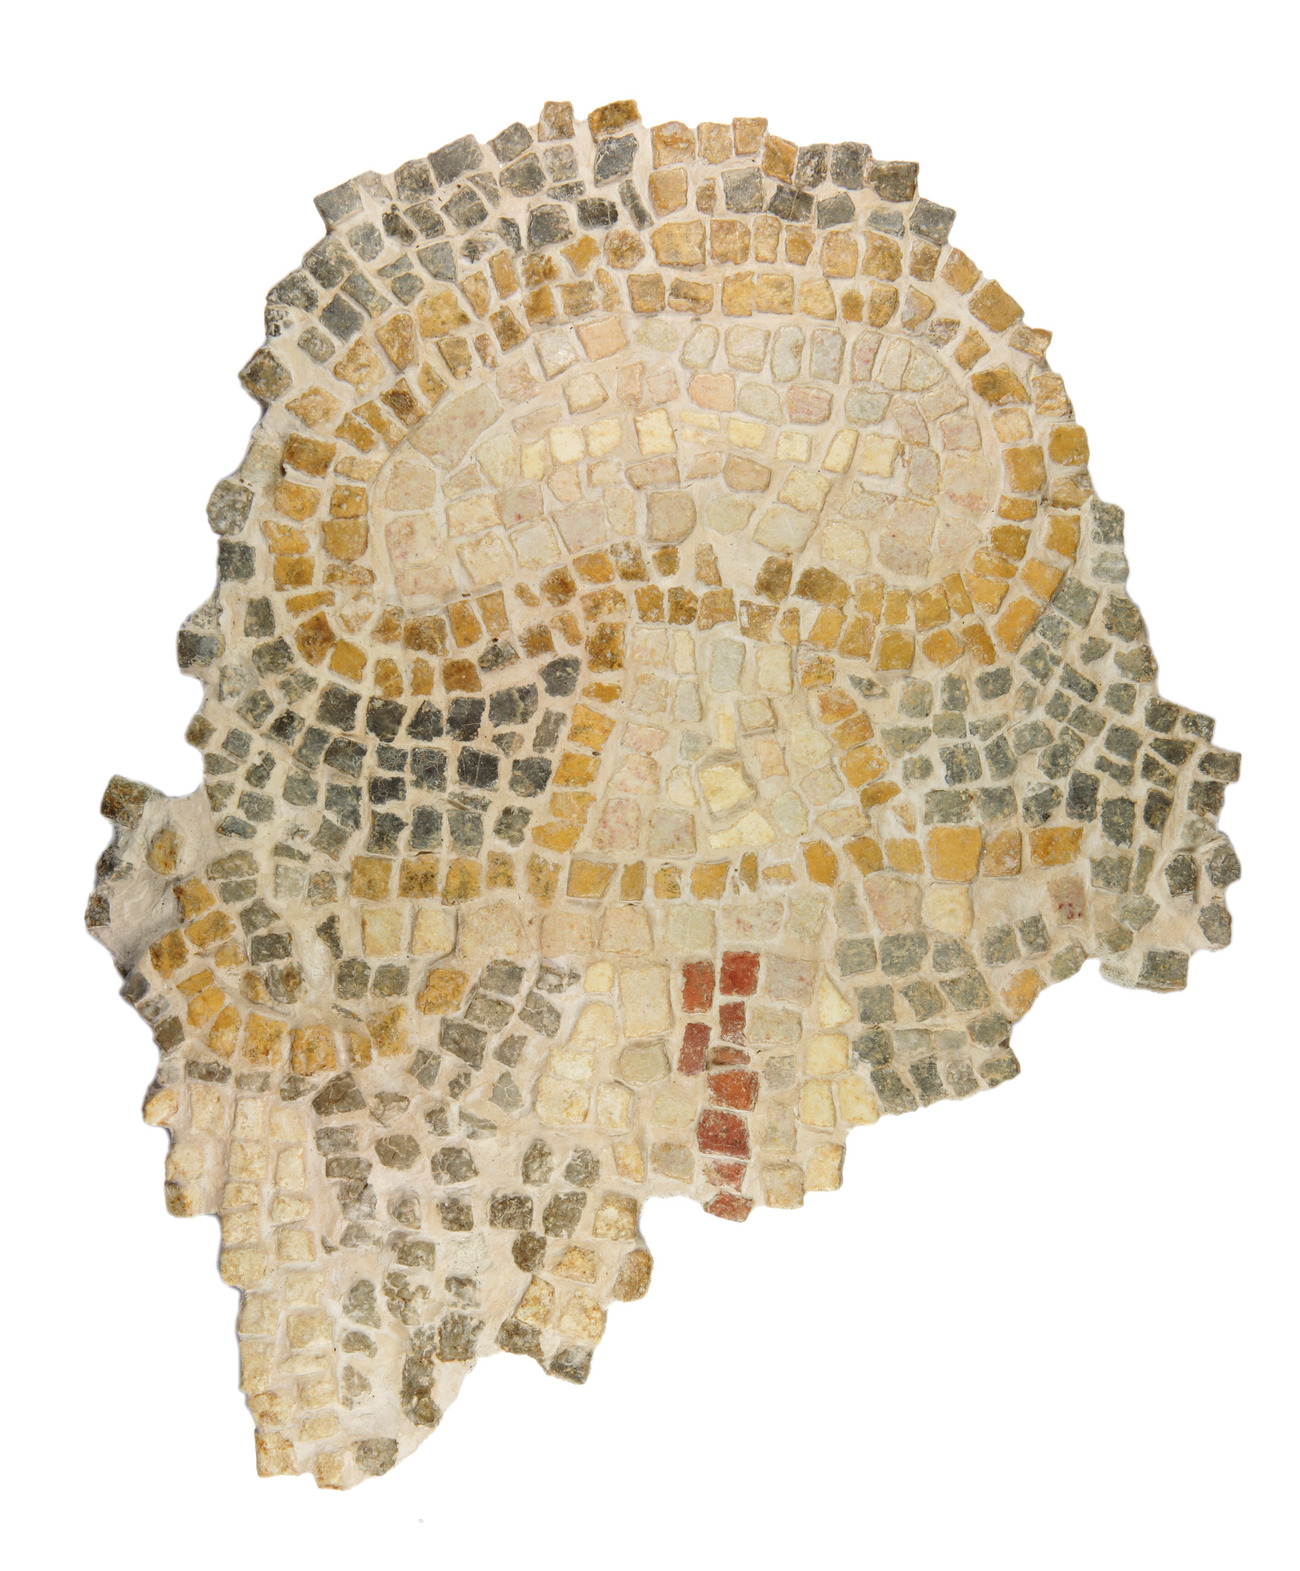 Fragmento de mosaico